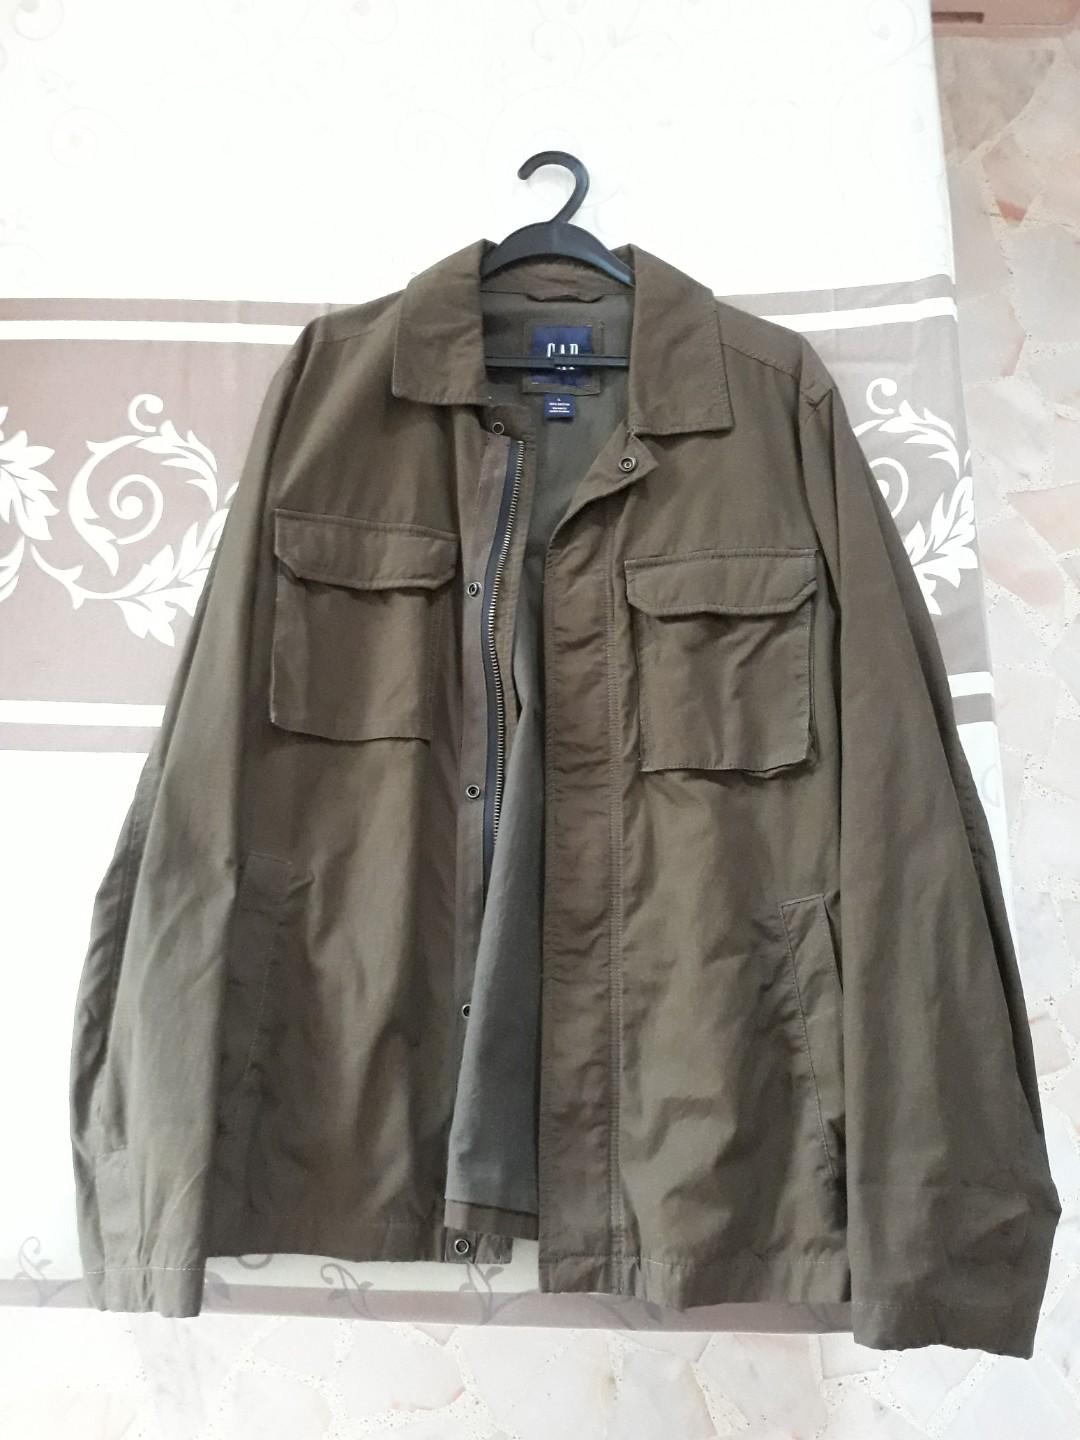 gap rn 54023 jacket